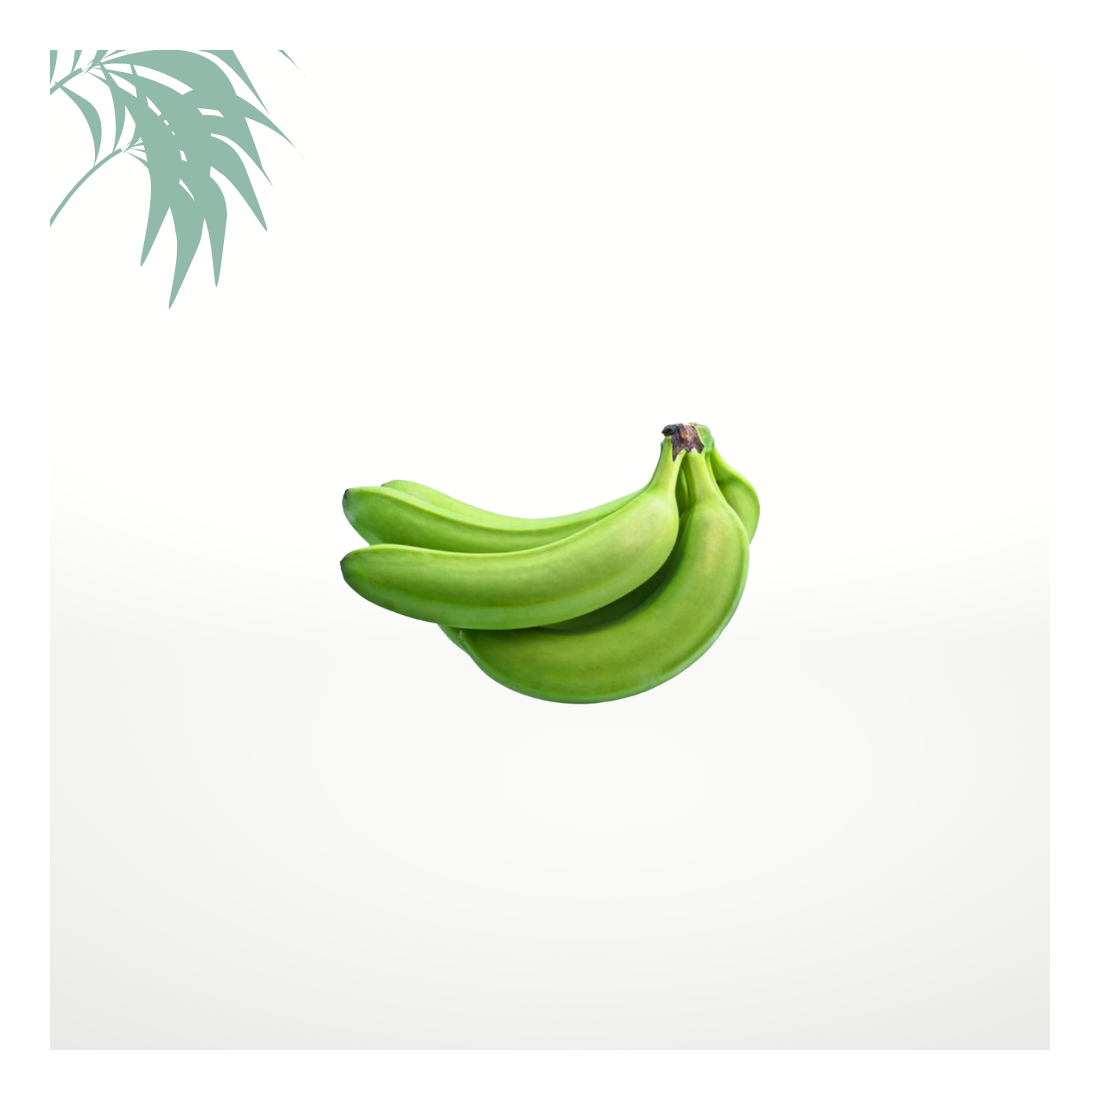 Bananes vertes / poyos - 3kg